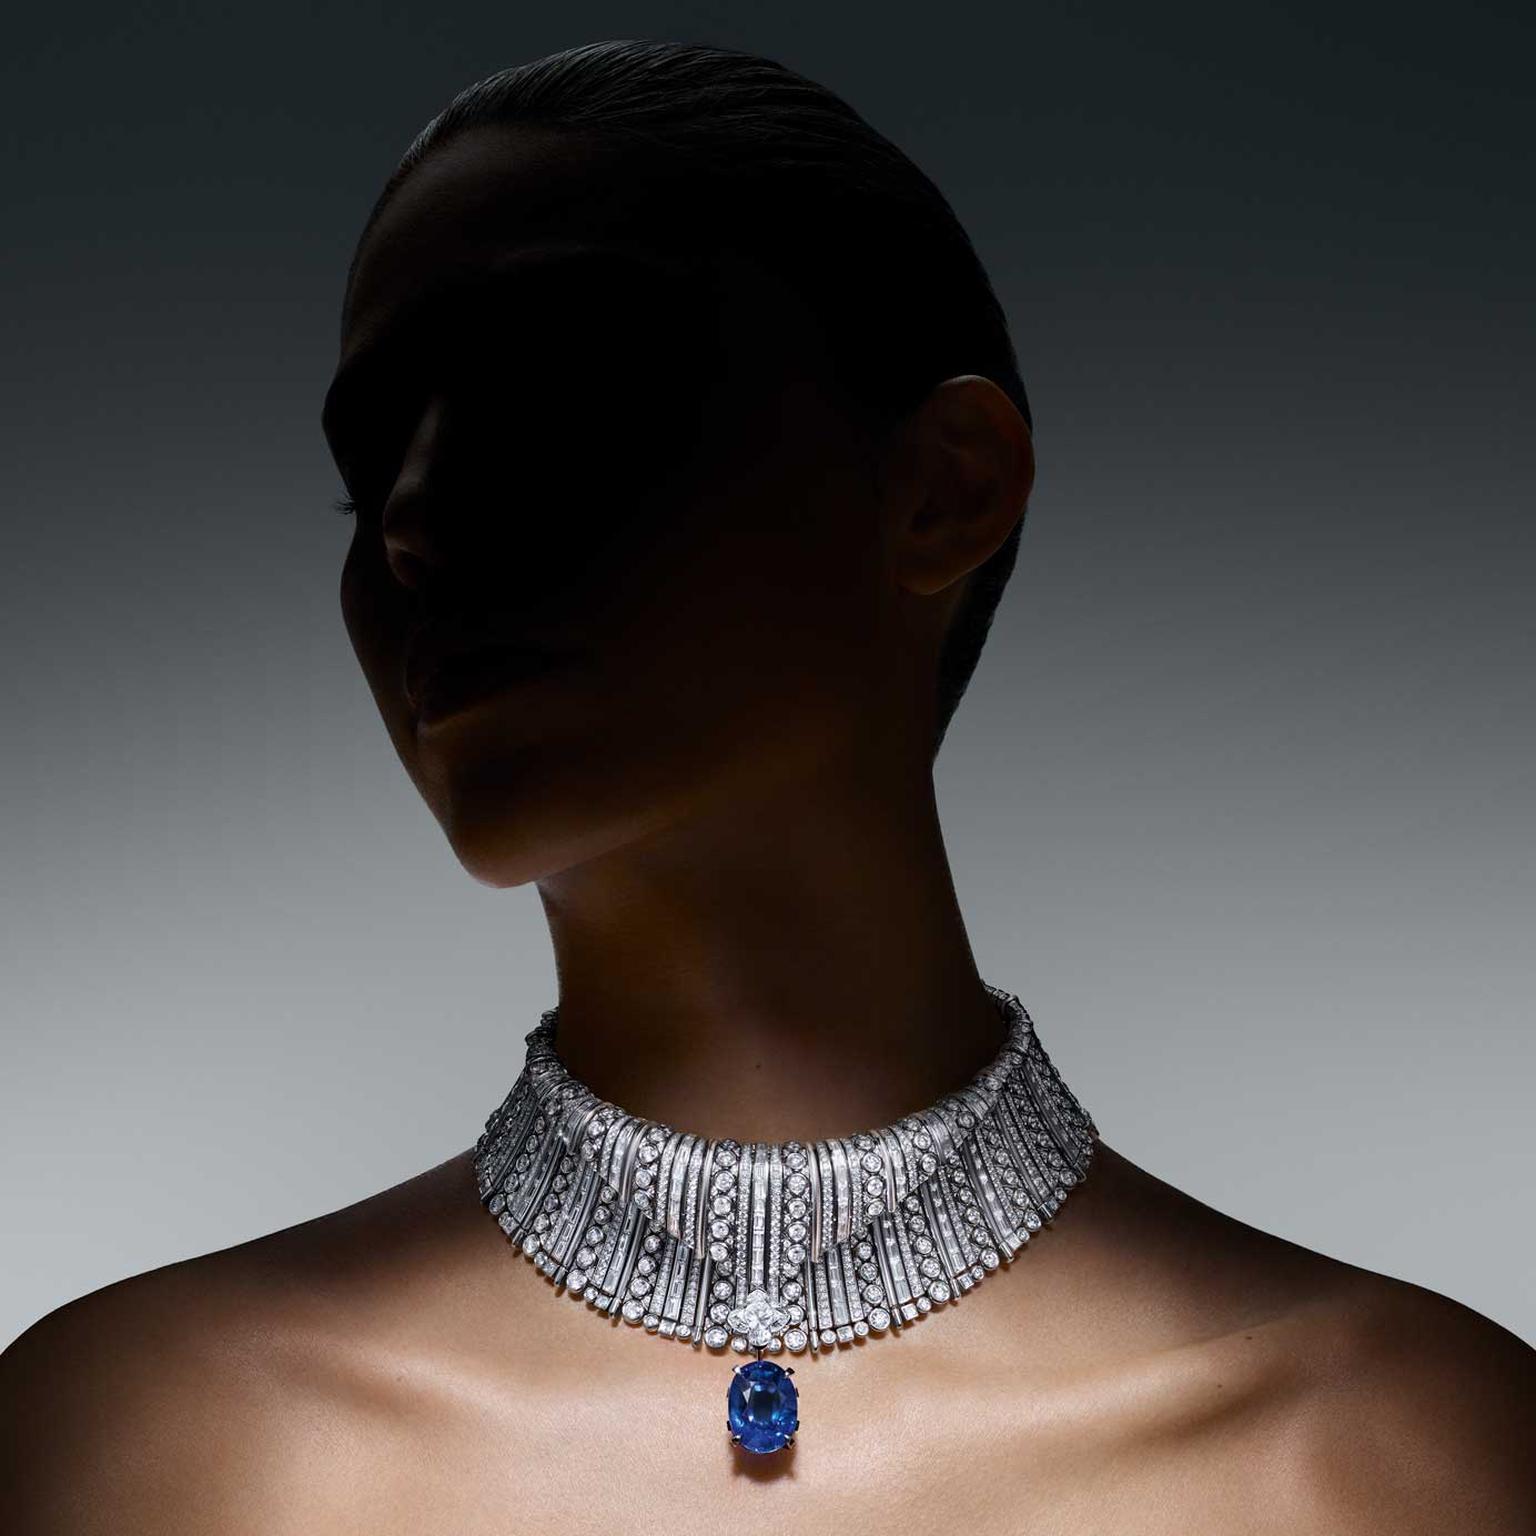 Wave necklace by Louis Vuitton, Louis Vuitton